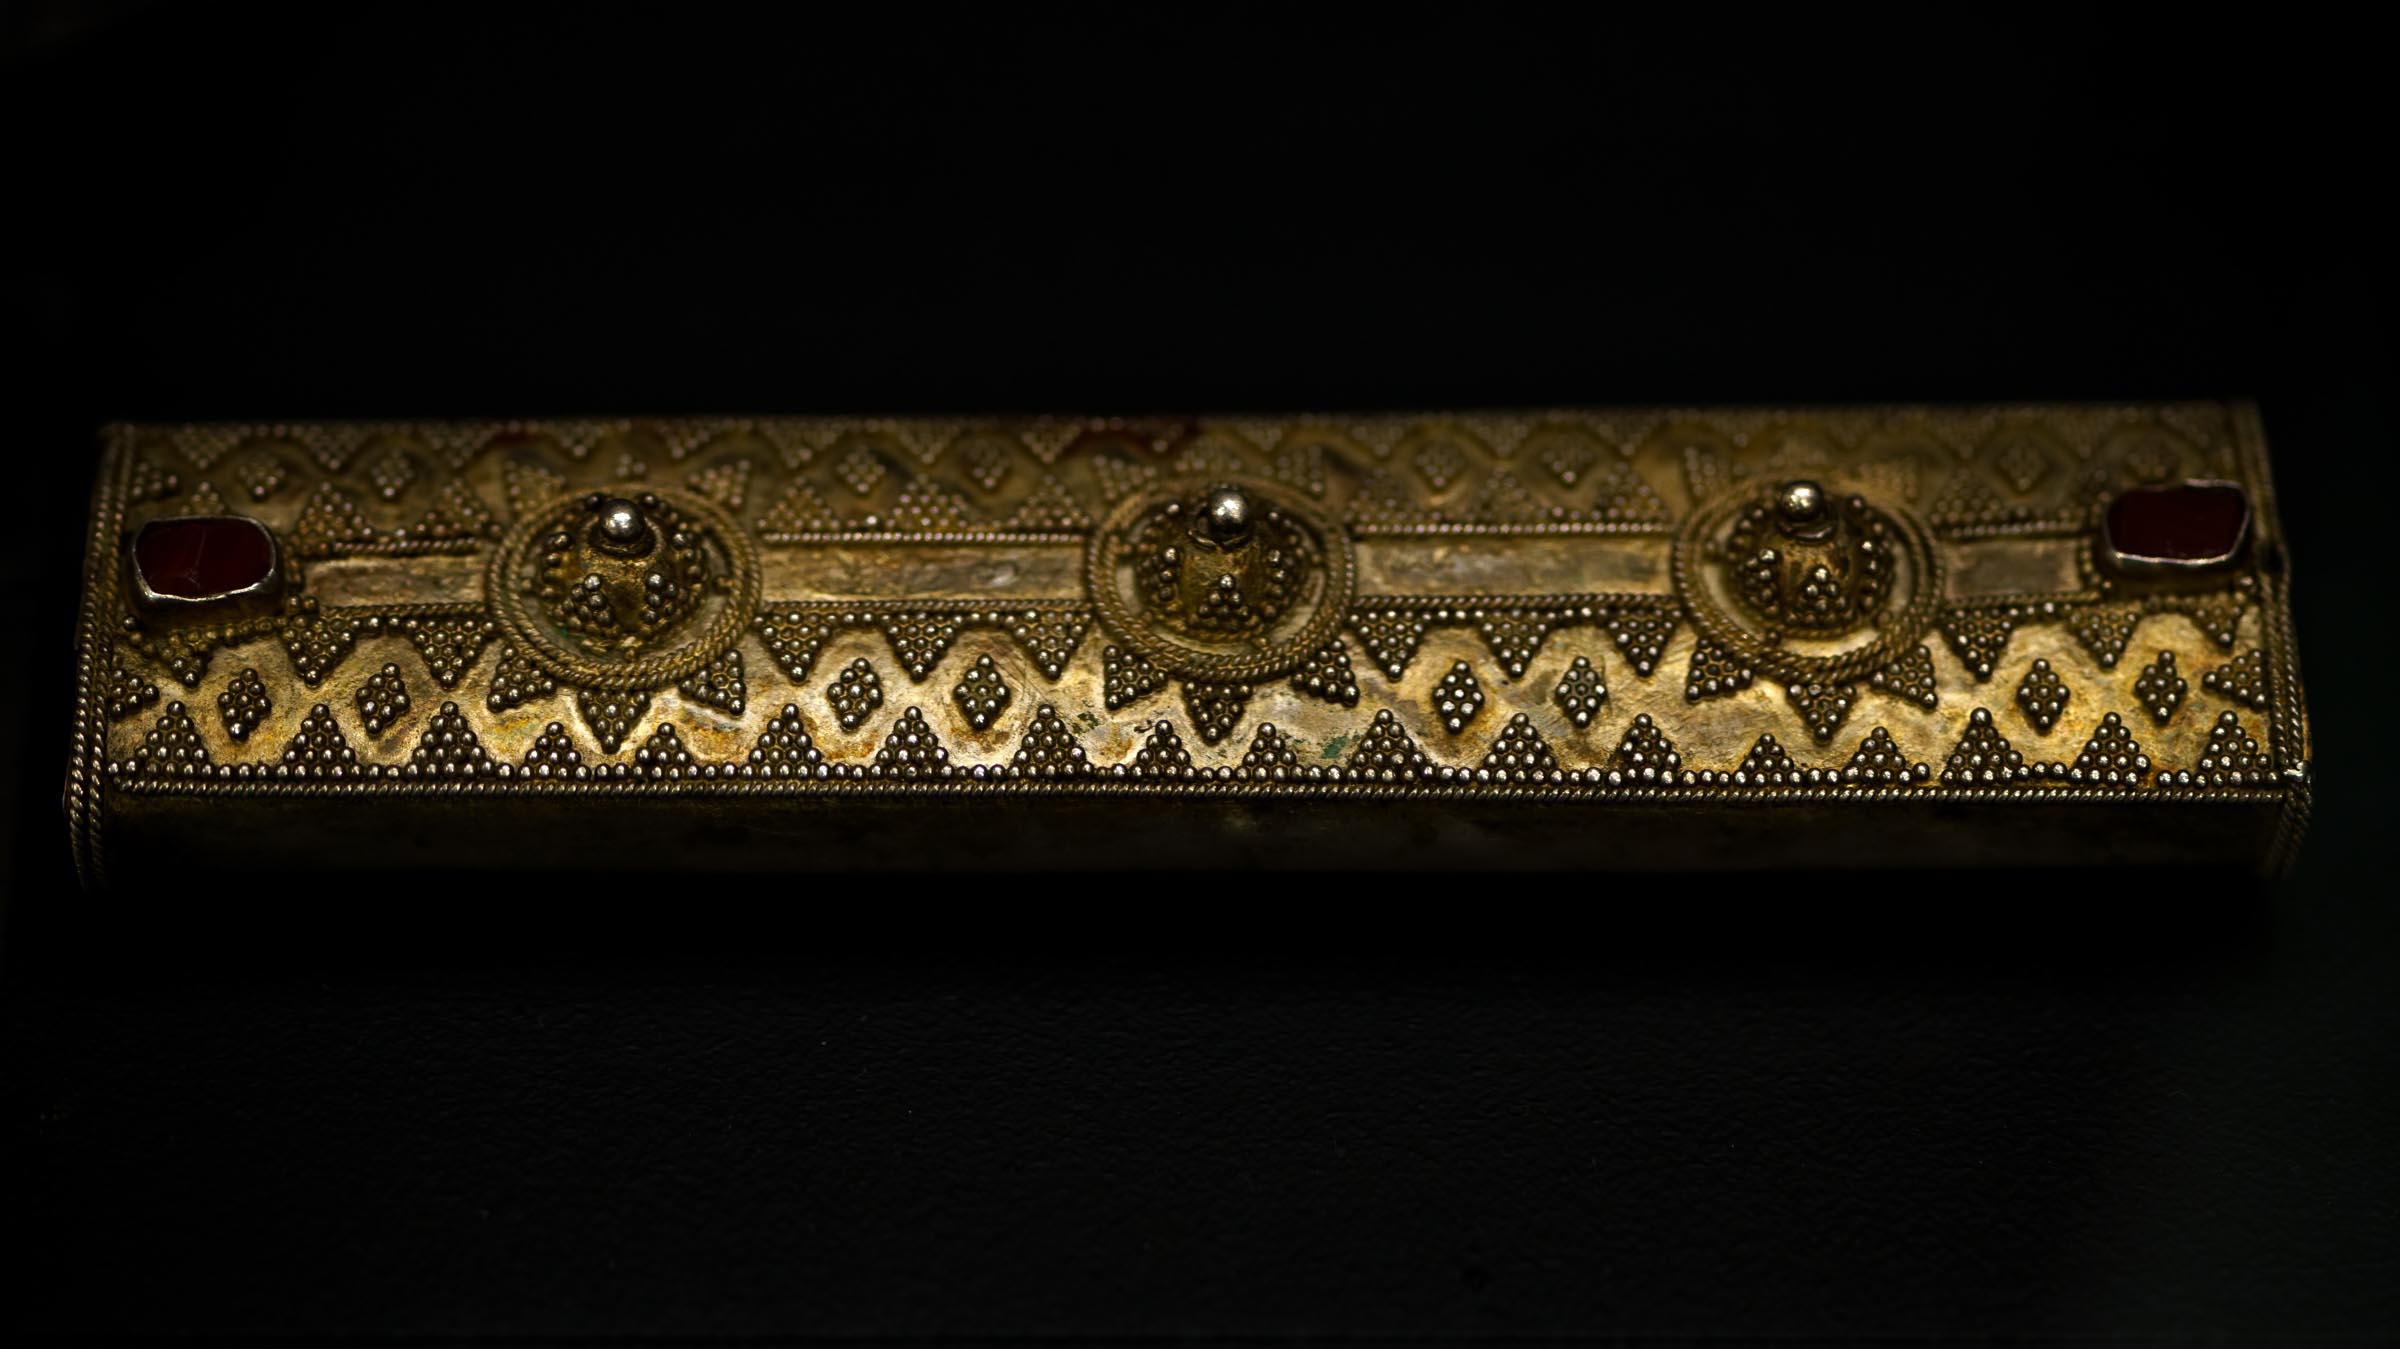 Обкладка ножен. Прикамье (?) XII-XIII вв.::«Серебро за меха» выставка 